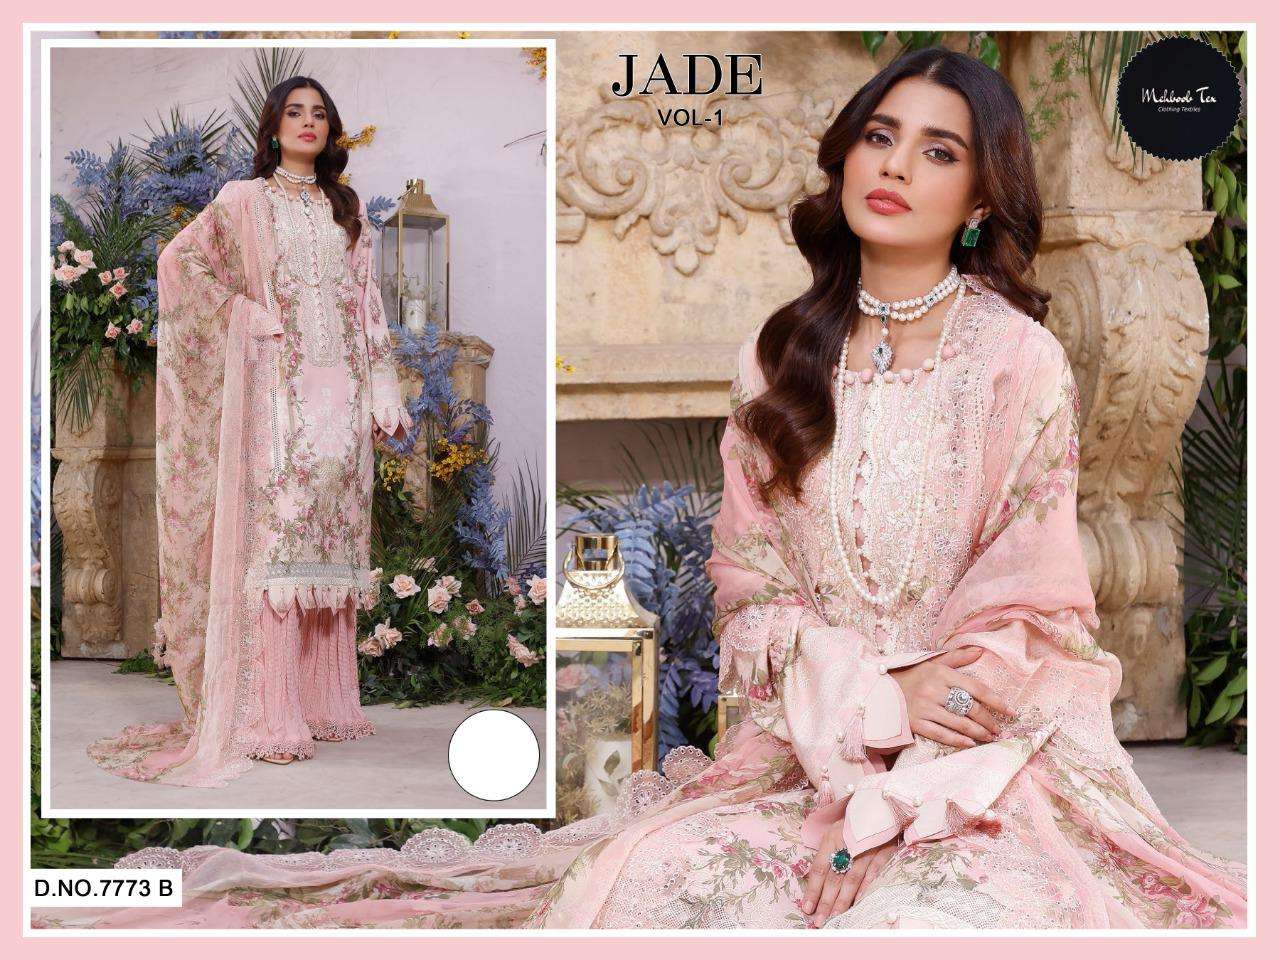 Mehboob Tex Jade Vol 1 Pakistani Suit Wholesaler